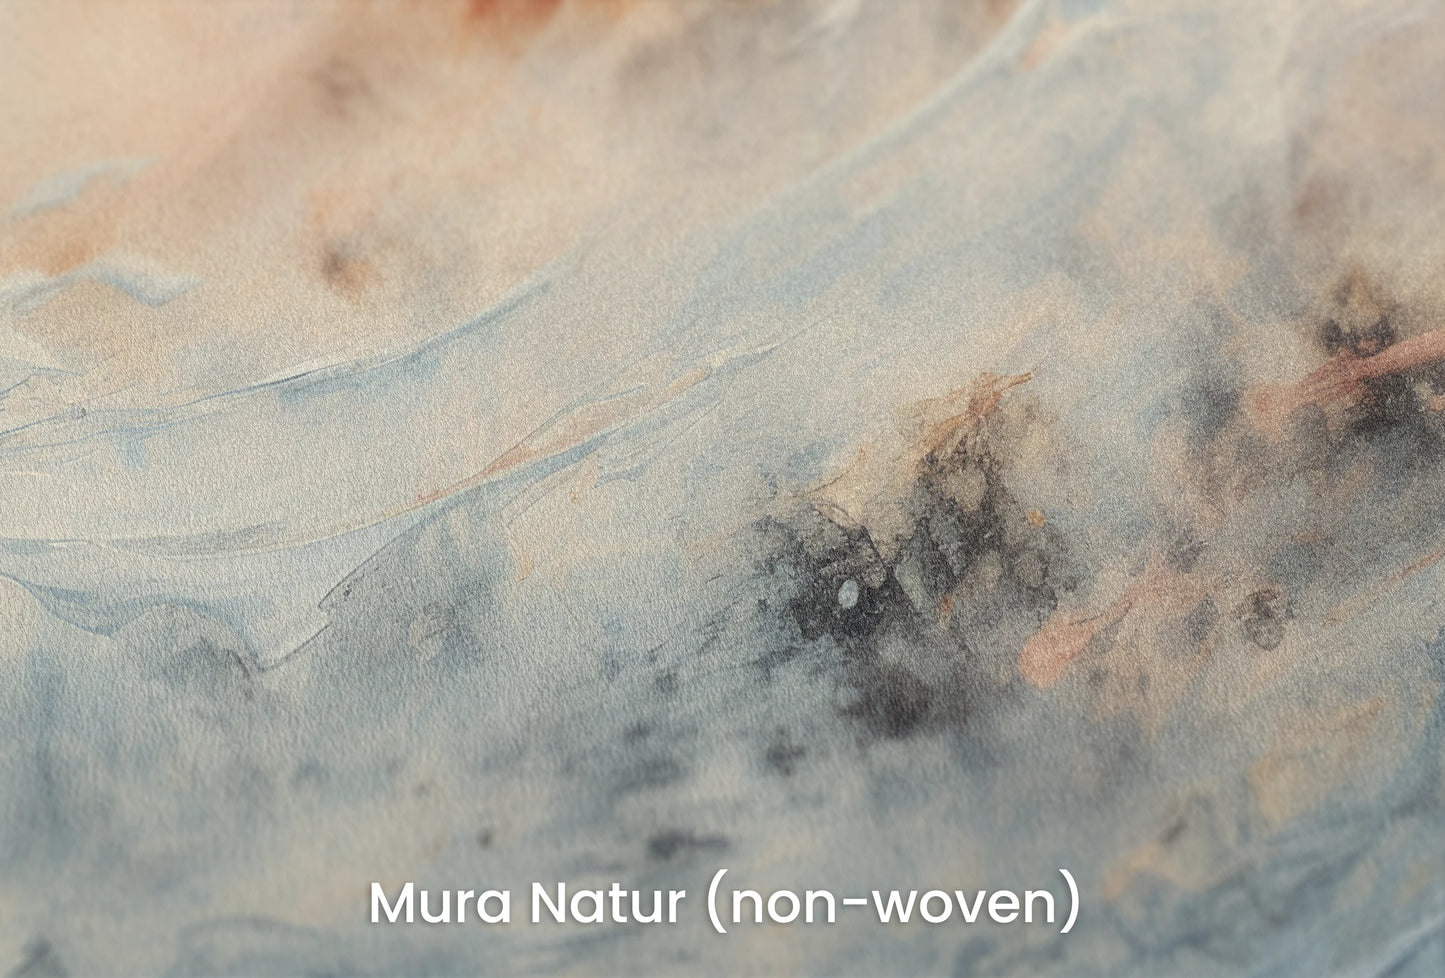 Zbliżenie na artystyczną fototapetę o nazwie Moon's Tranquility na podłożu Mura Natur (non-woven) - naturalne i ekologiczne podłoże.